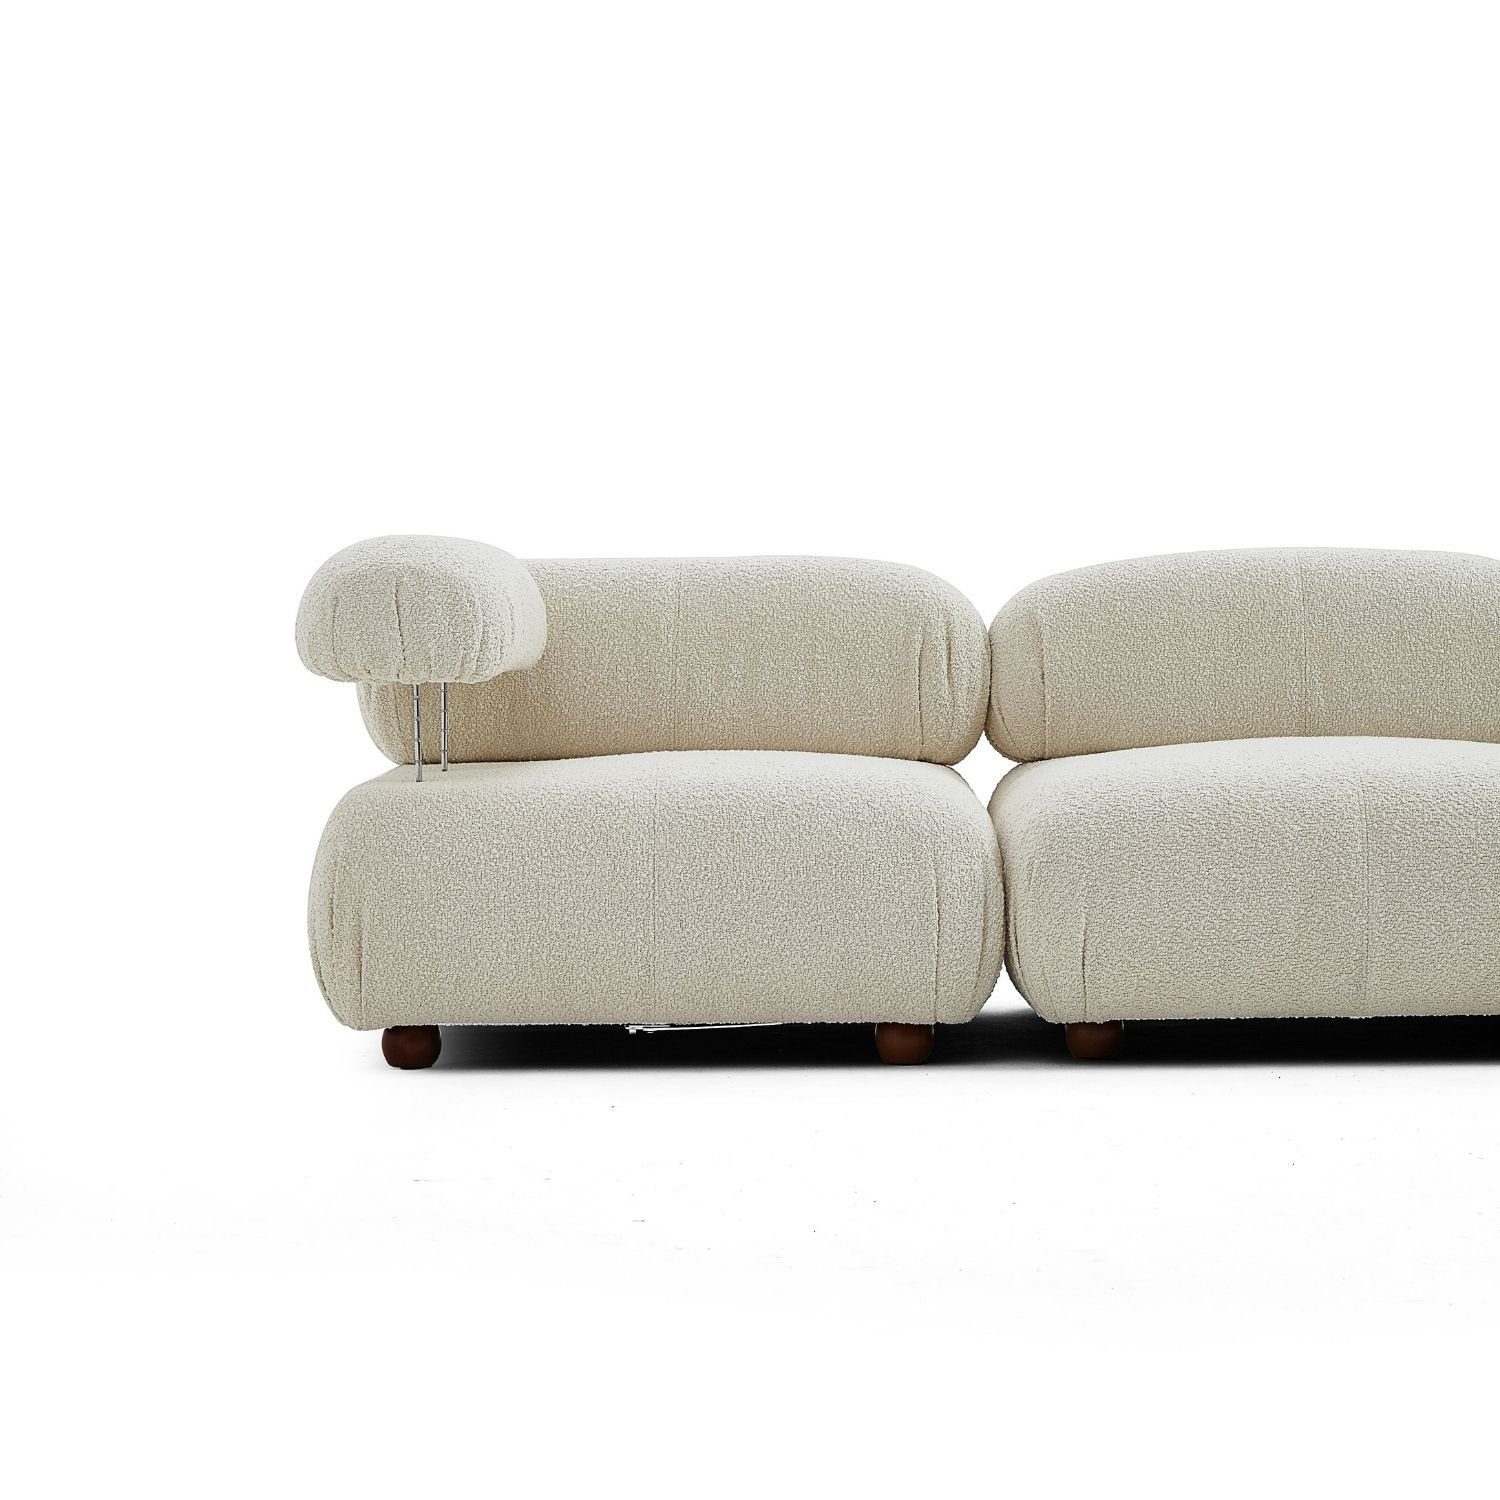 Aufbau Sitzmöbel aus Komfortschaum neueste enthalten! Preis Knuffiges und me Rosa-Lieferung Touch Generation Sofa im